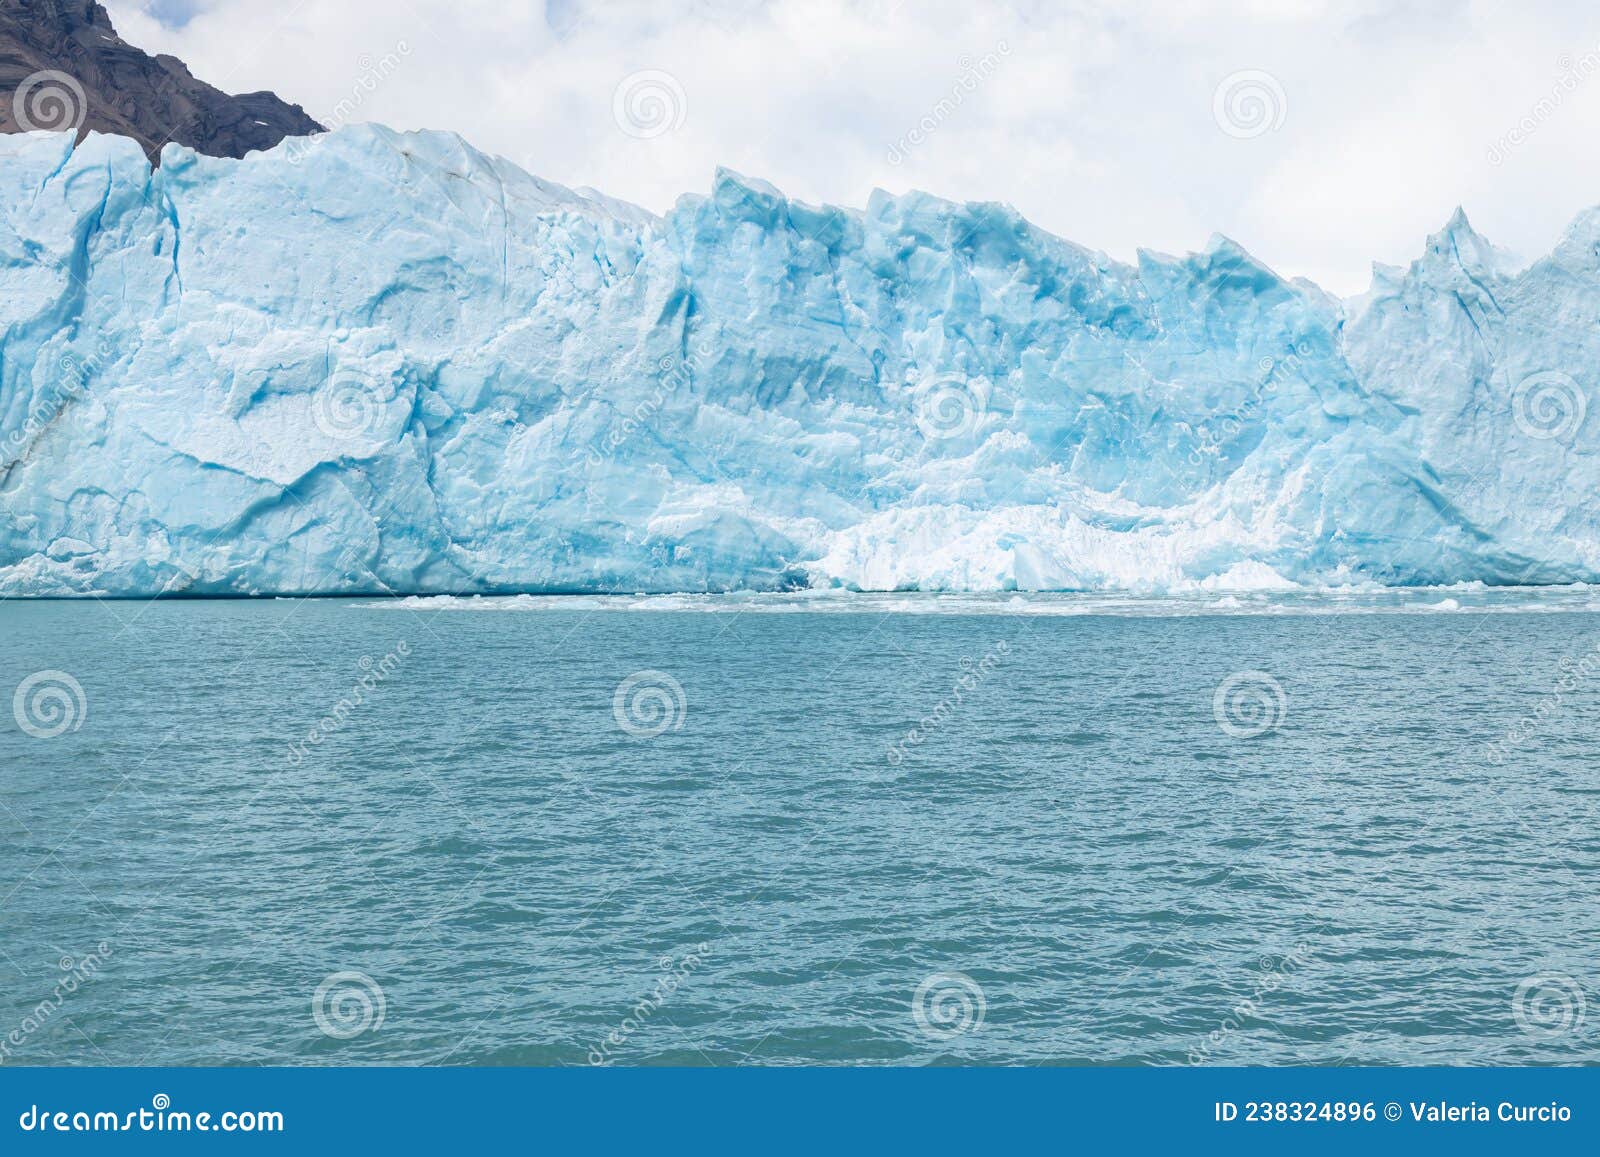 glacier landscape and mountains